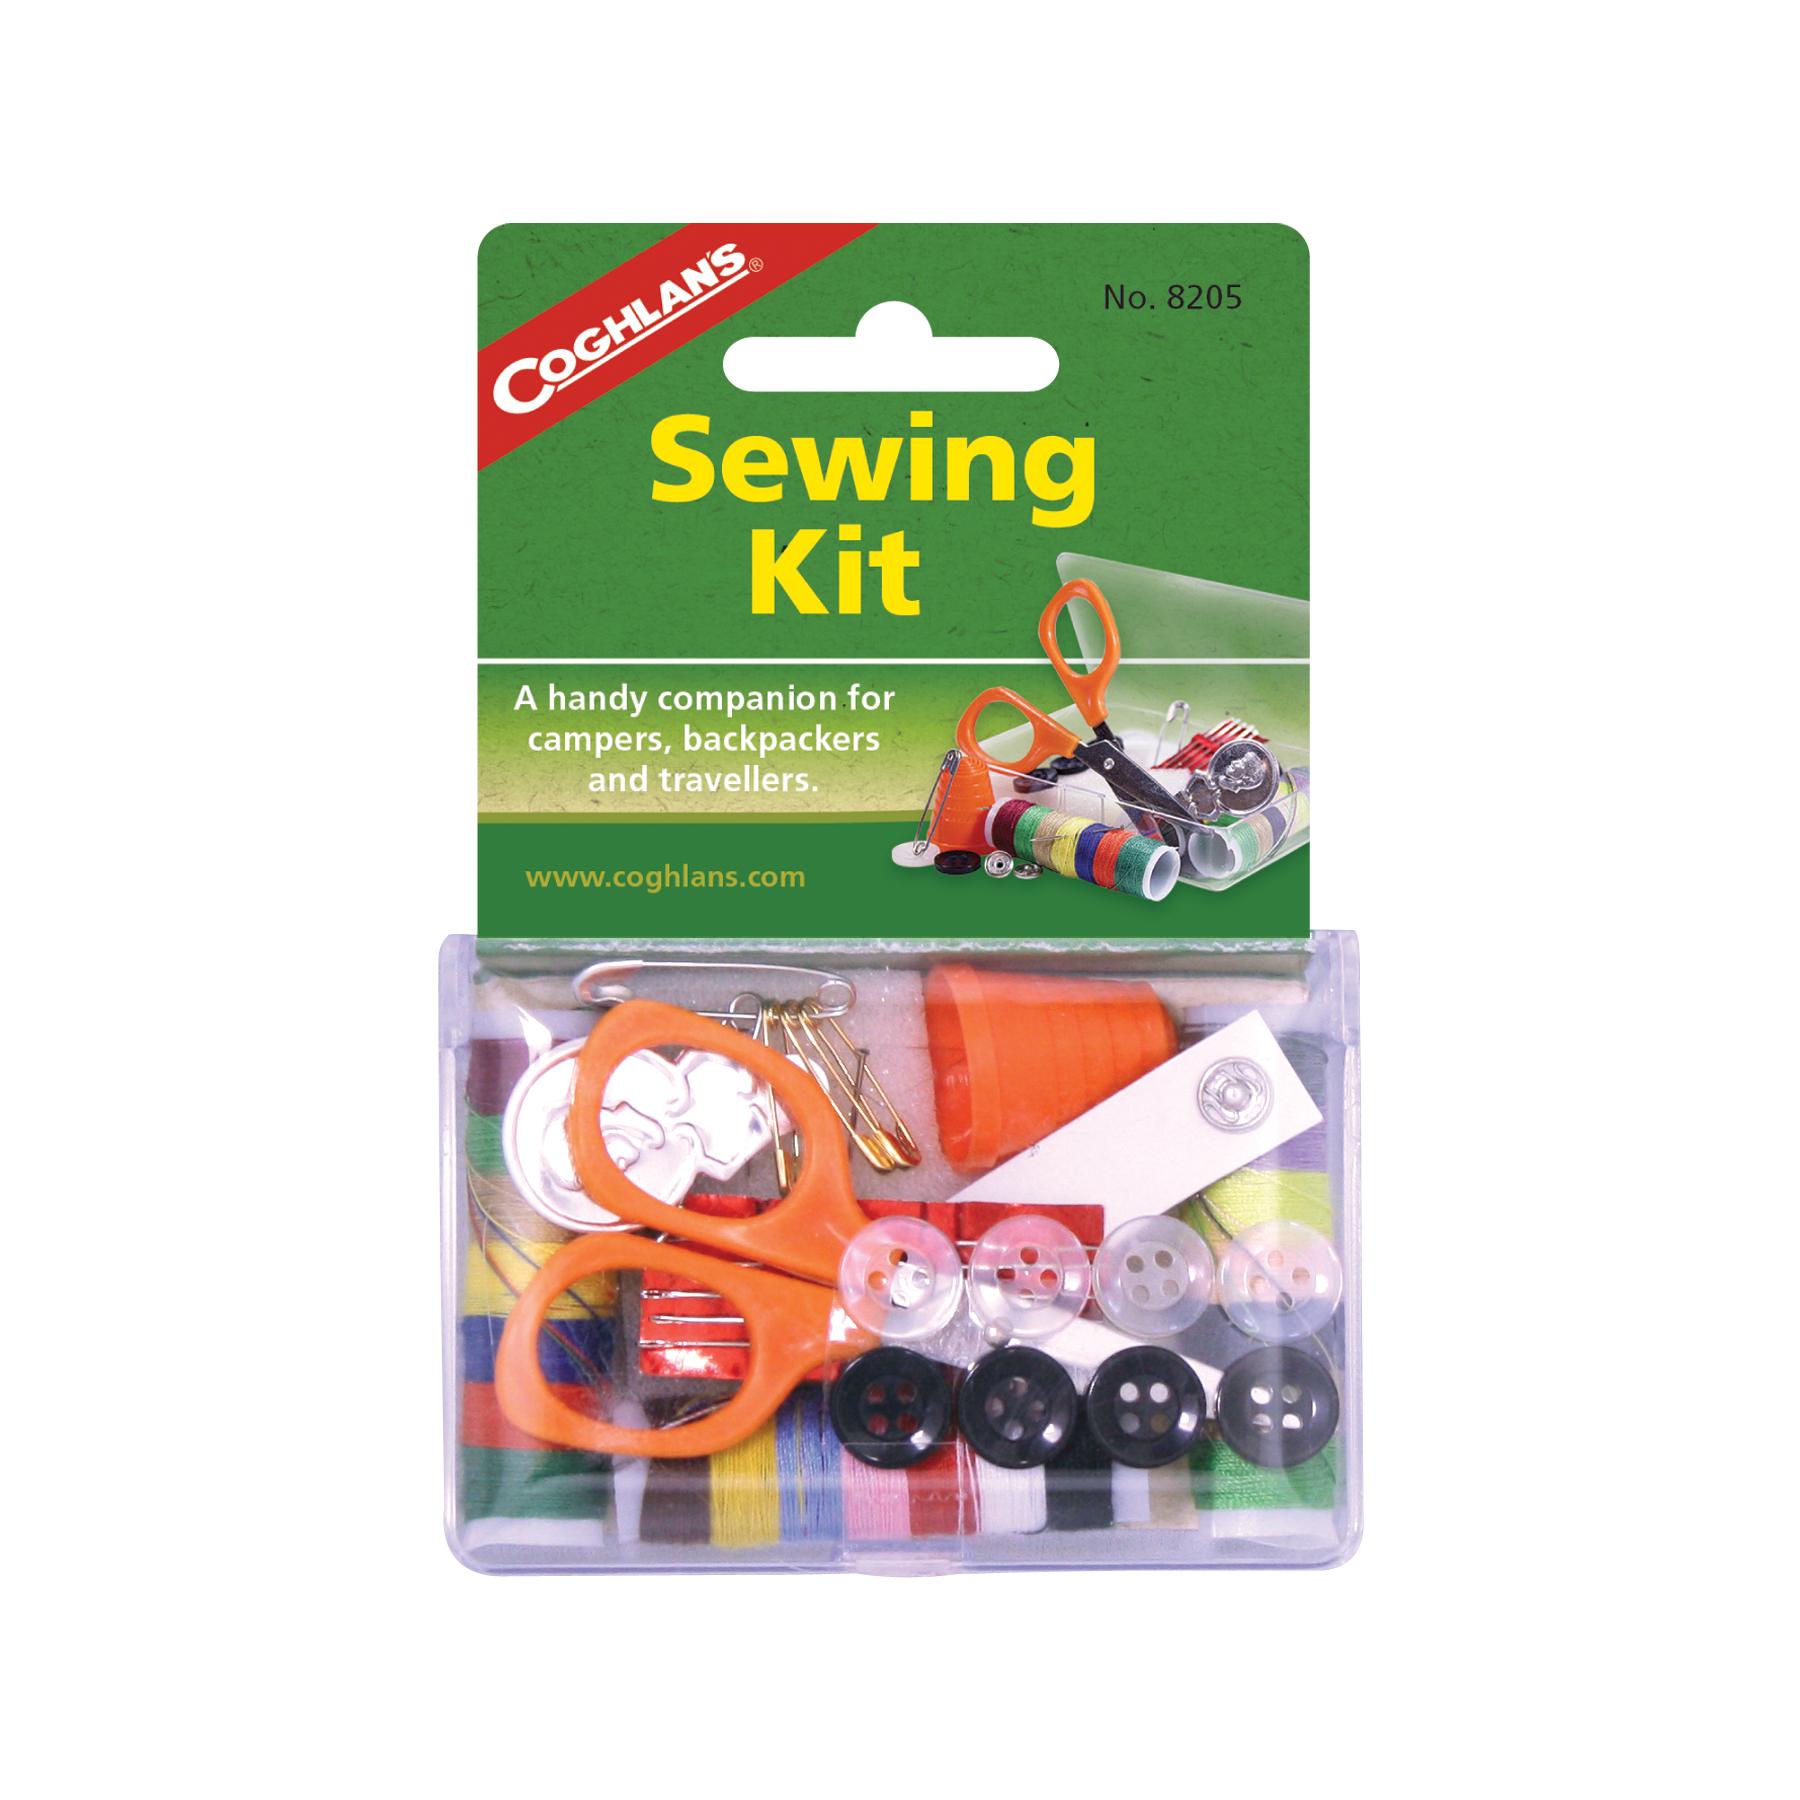  Sewing Kit